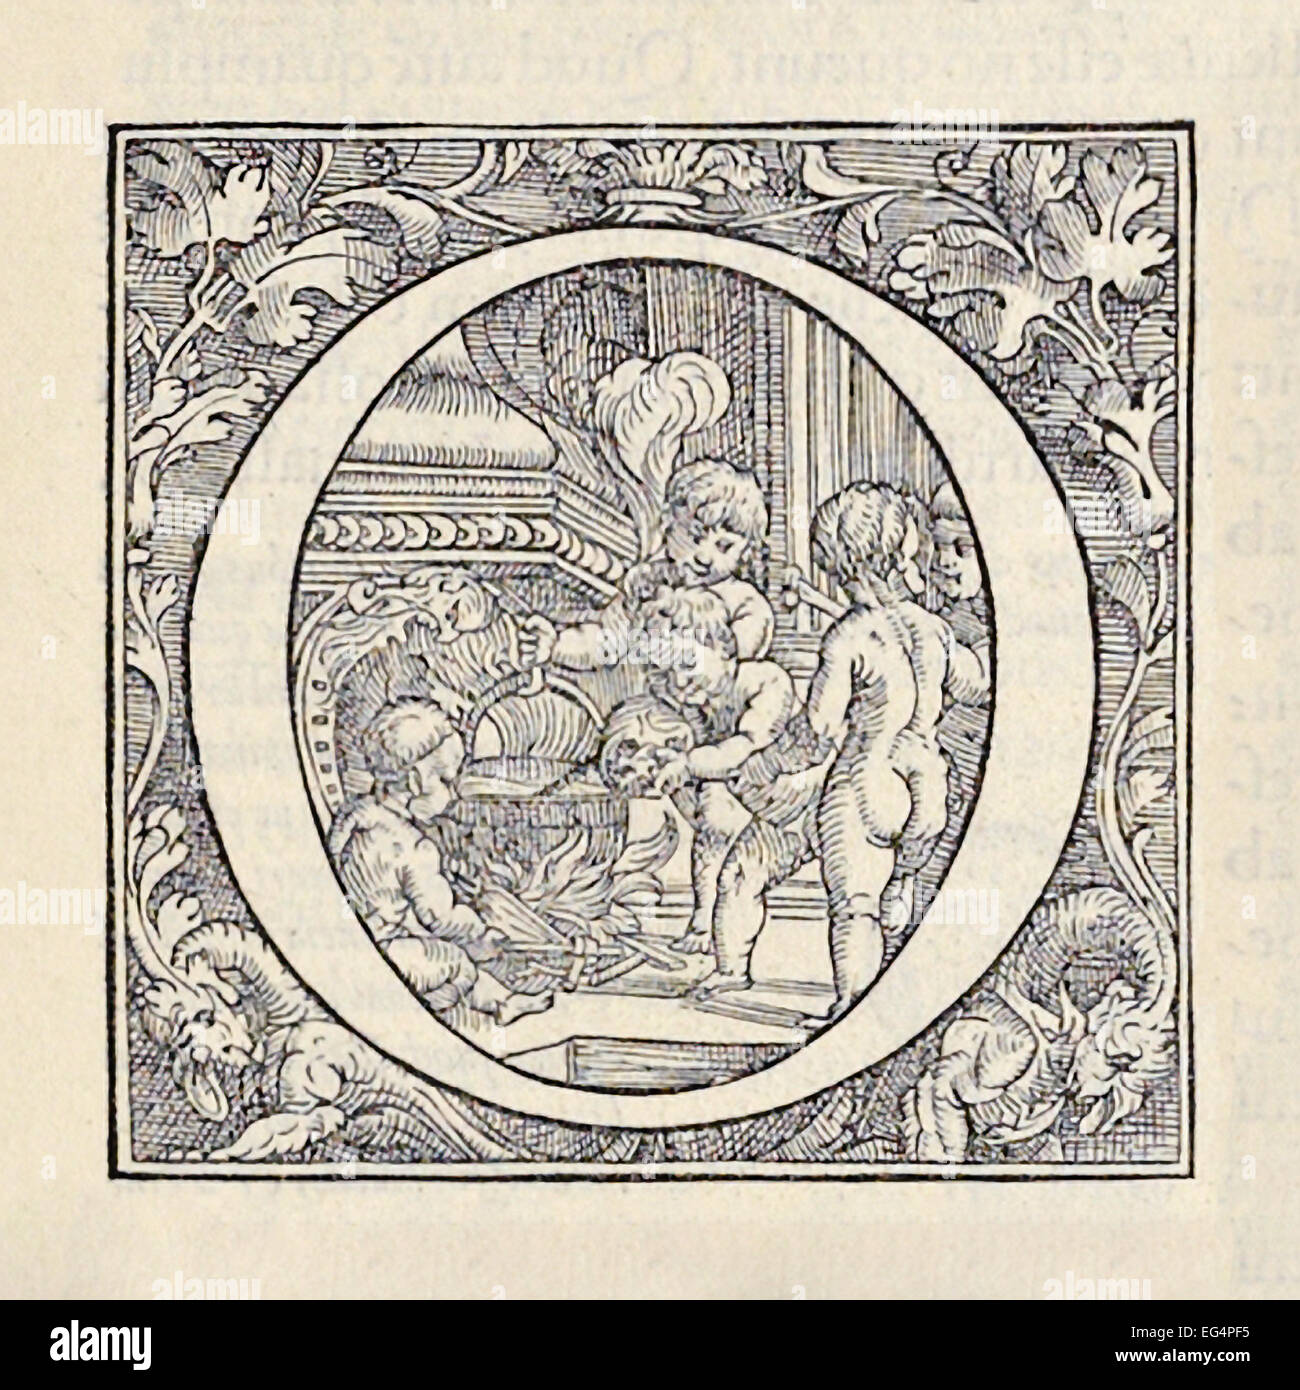 Beleuchtete ' o ' aus "De Humani Corporis Fabrica Libri Septem" von Andreas Vesalius (1514-1564) veröffentlicht im Jahre 1543. Gezeigt, Putten kochen einen Schädel, weiches Gewebe zu entfernen. Siehe Beschreibung für mehr Informationen. Stockfoto